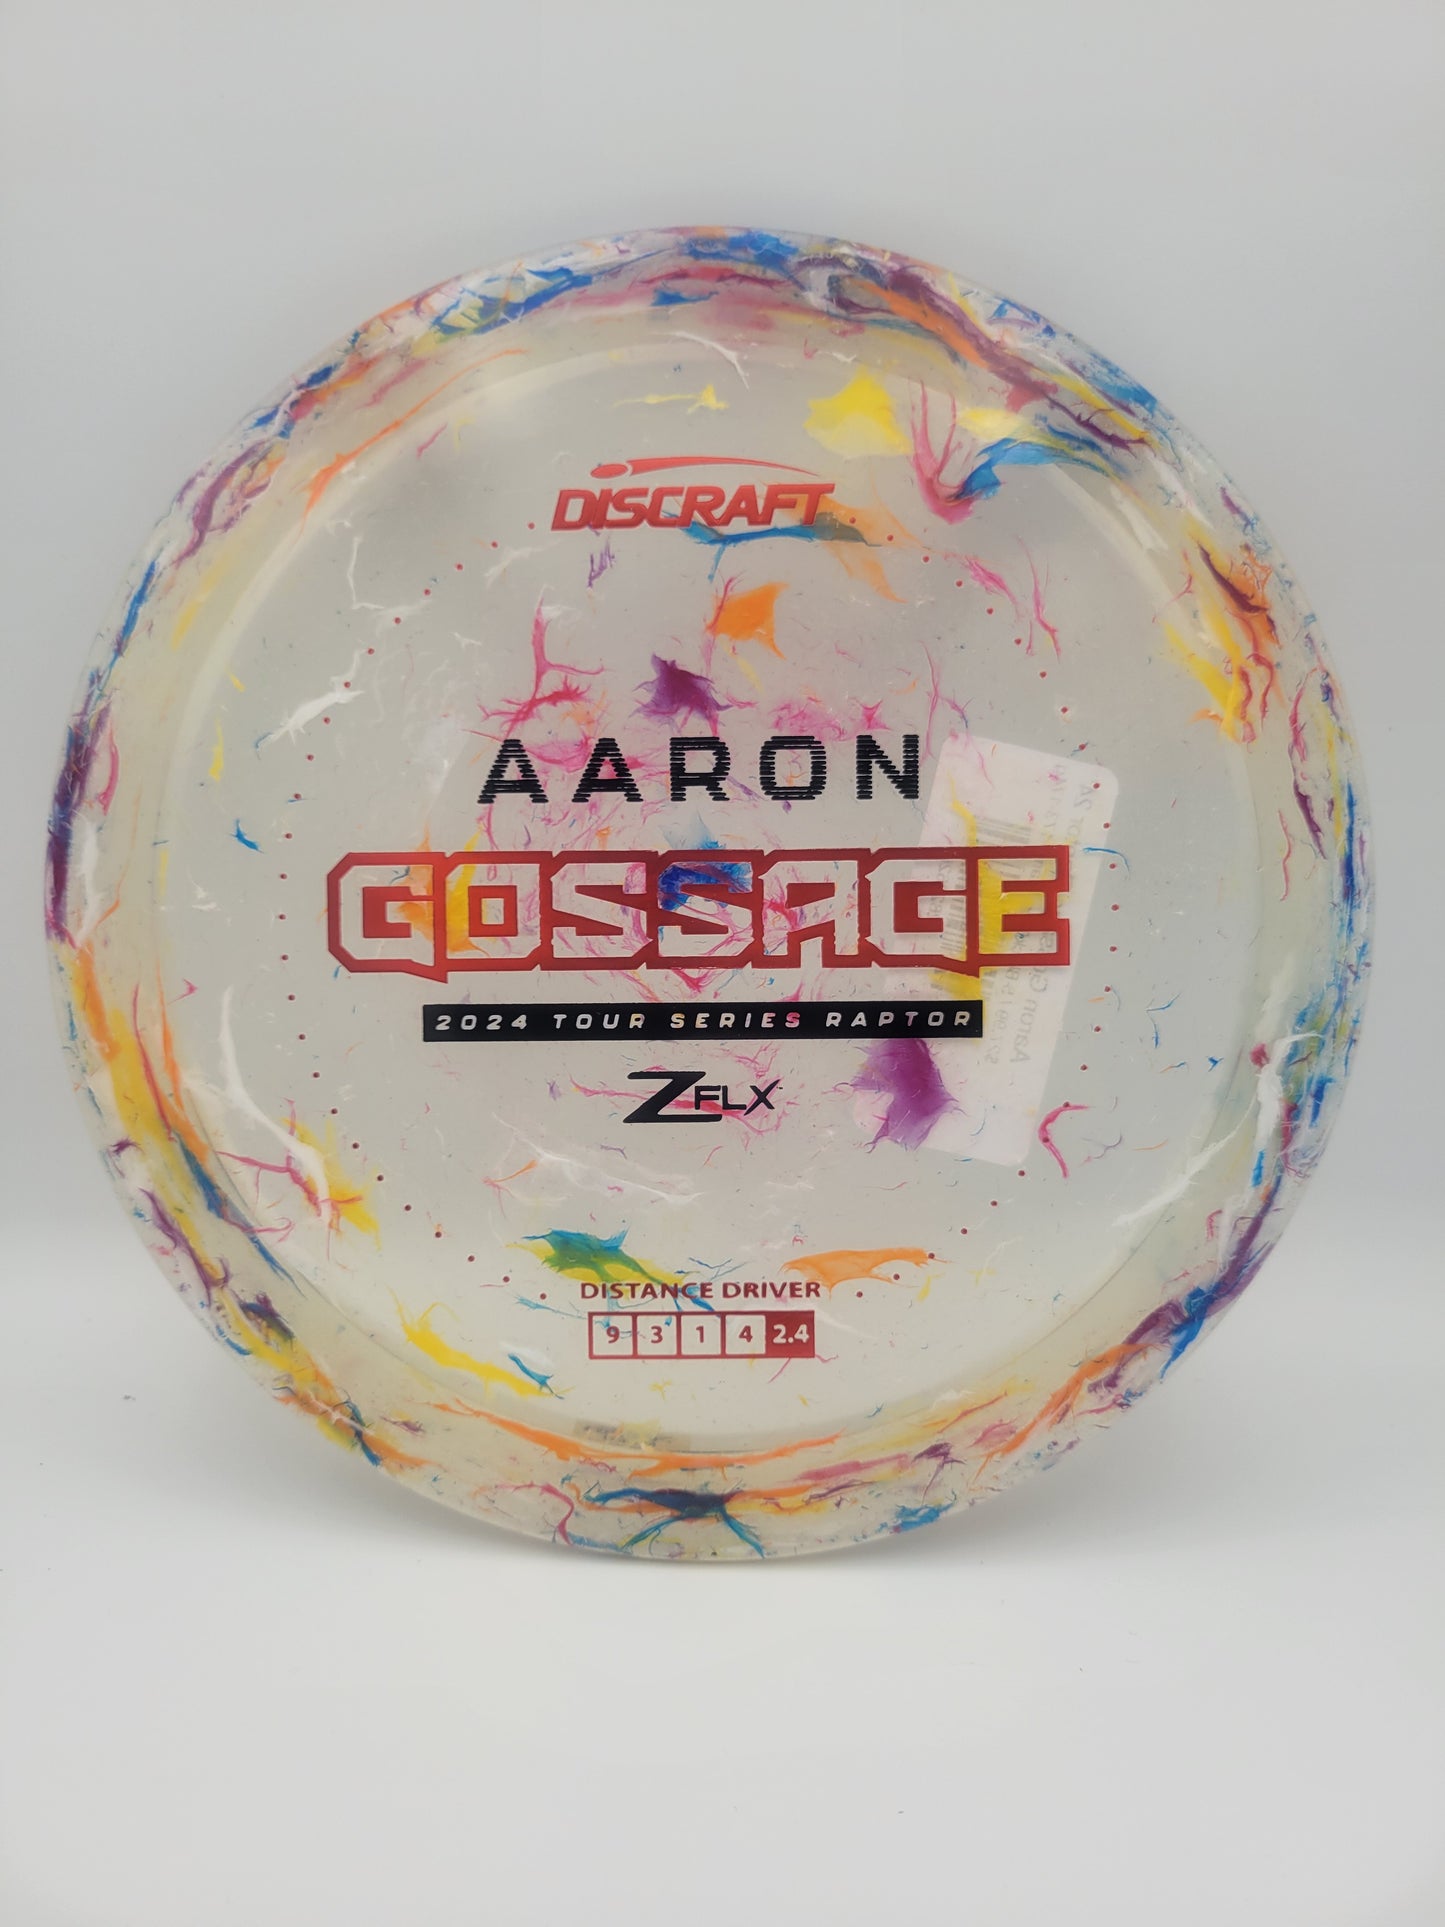 Aaron Gossage Raptor 24'